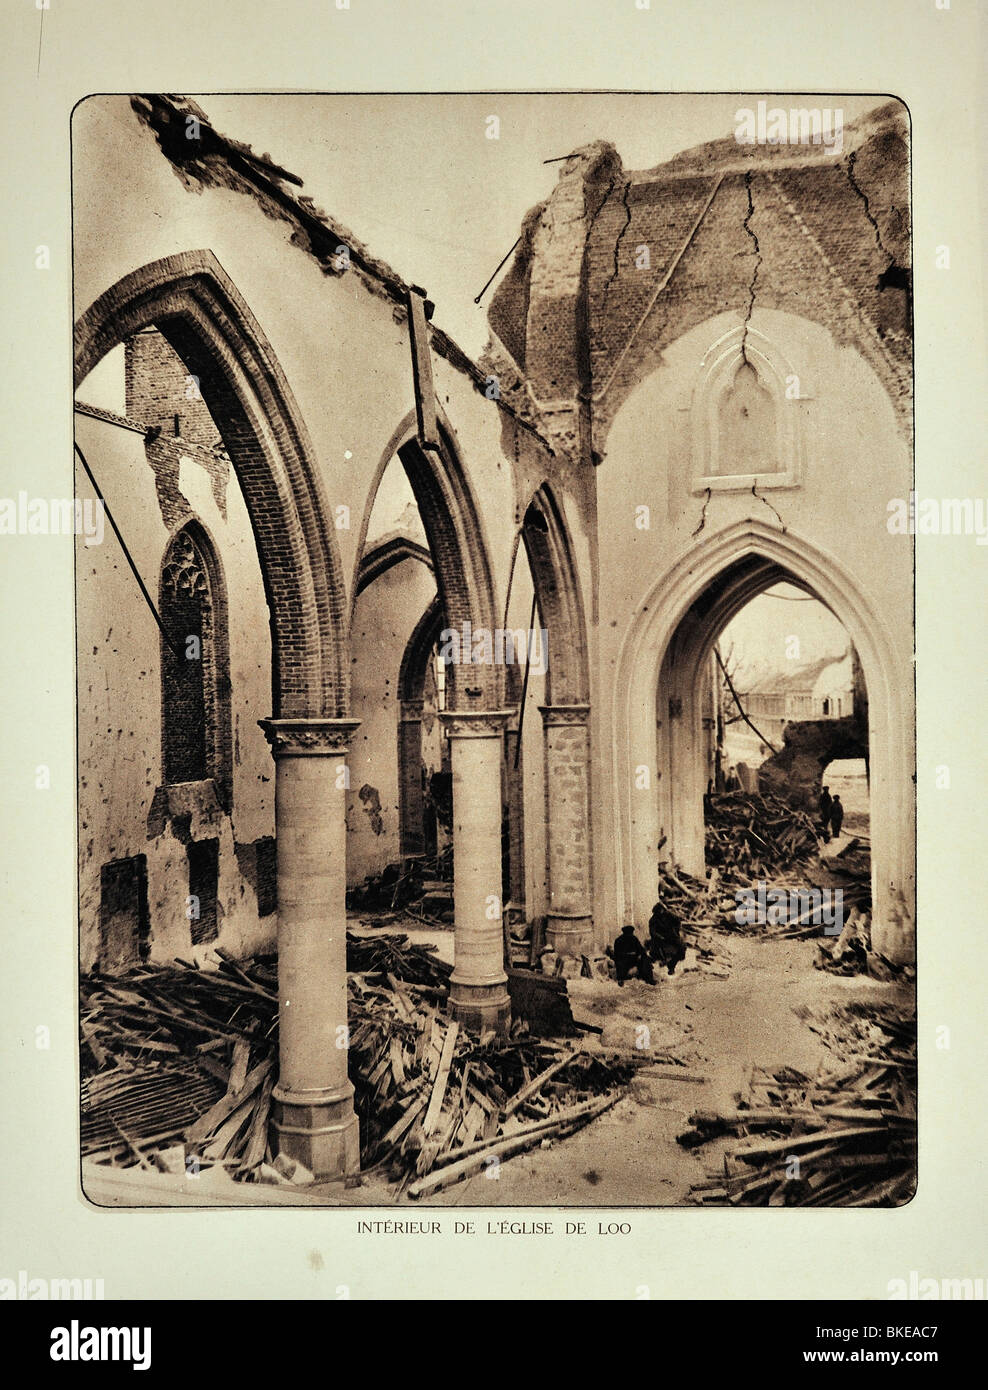 Die Kirche in Lo in Schutt und Asche nach WWI Bombardement in West-Flandern während des ersten Weltkriegs ein, Belgien Stockfoto